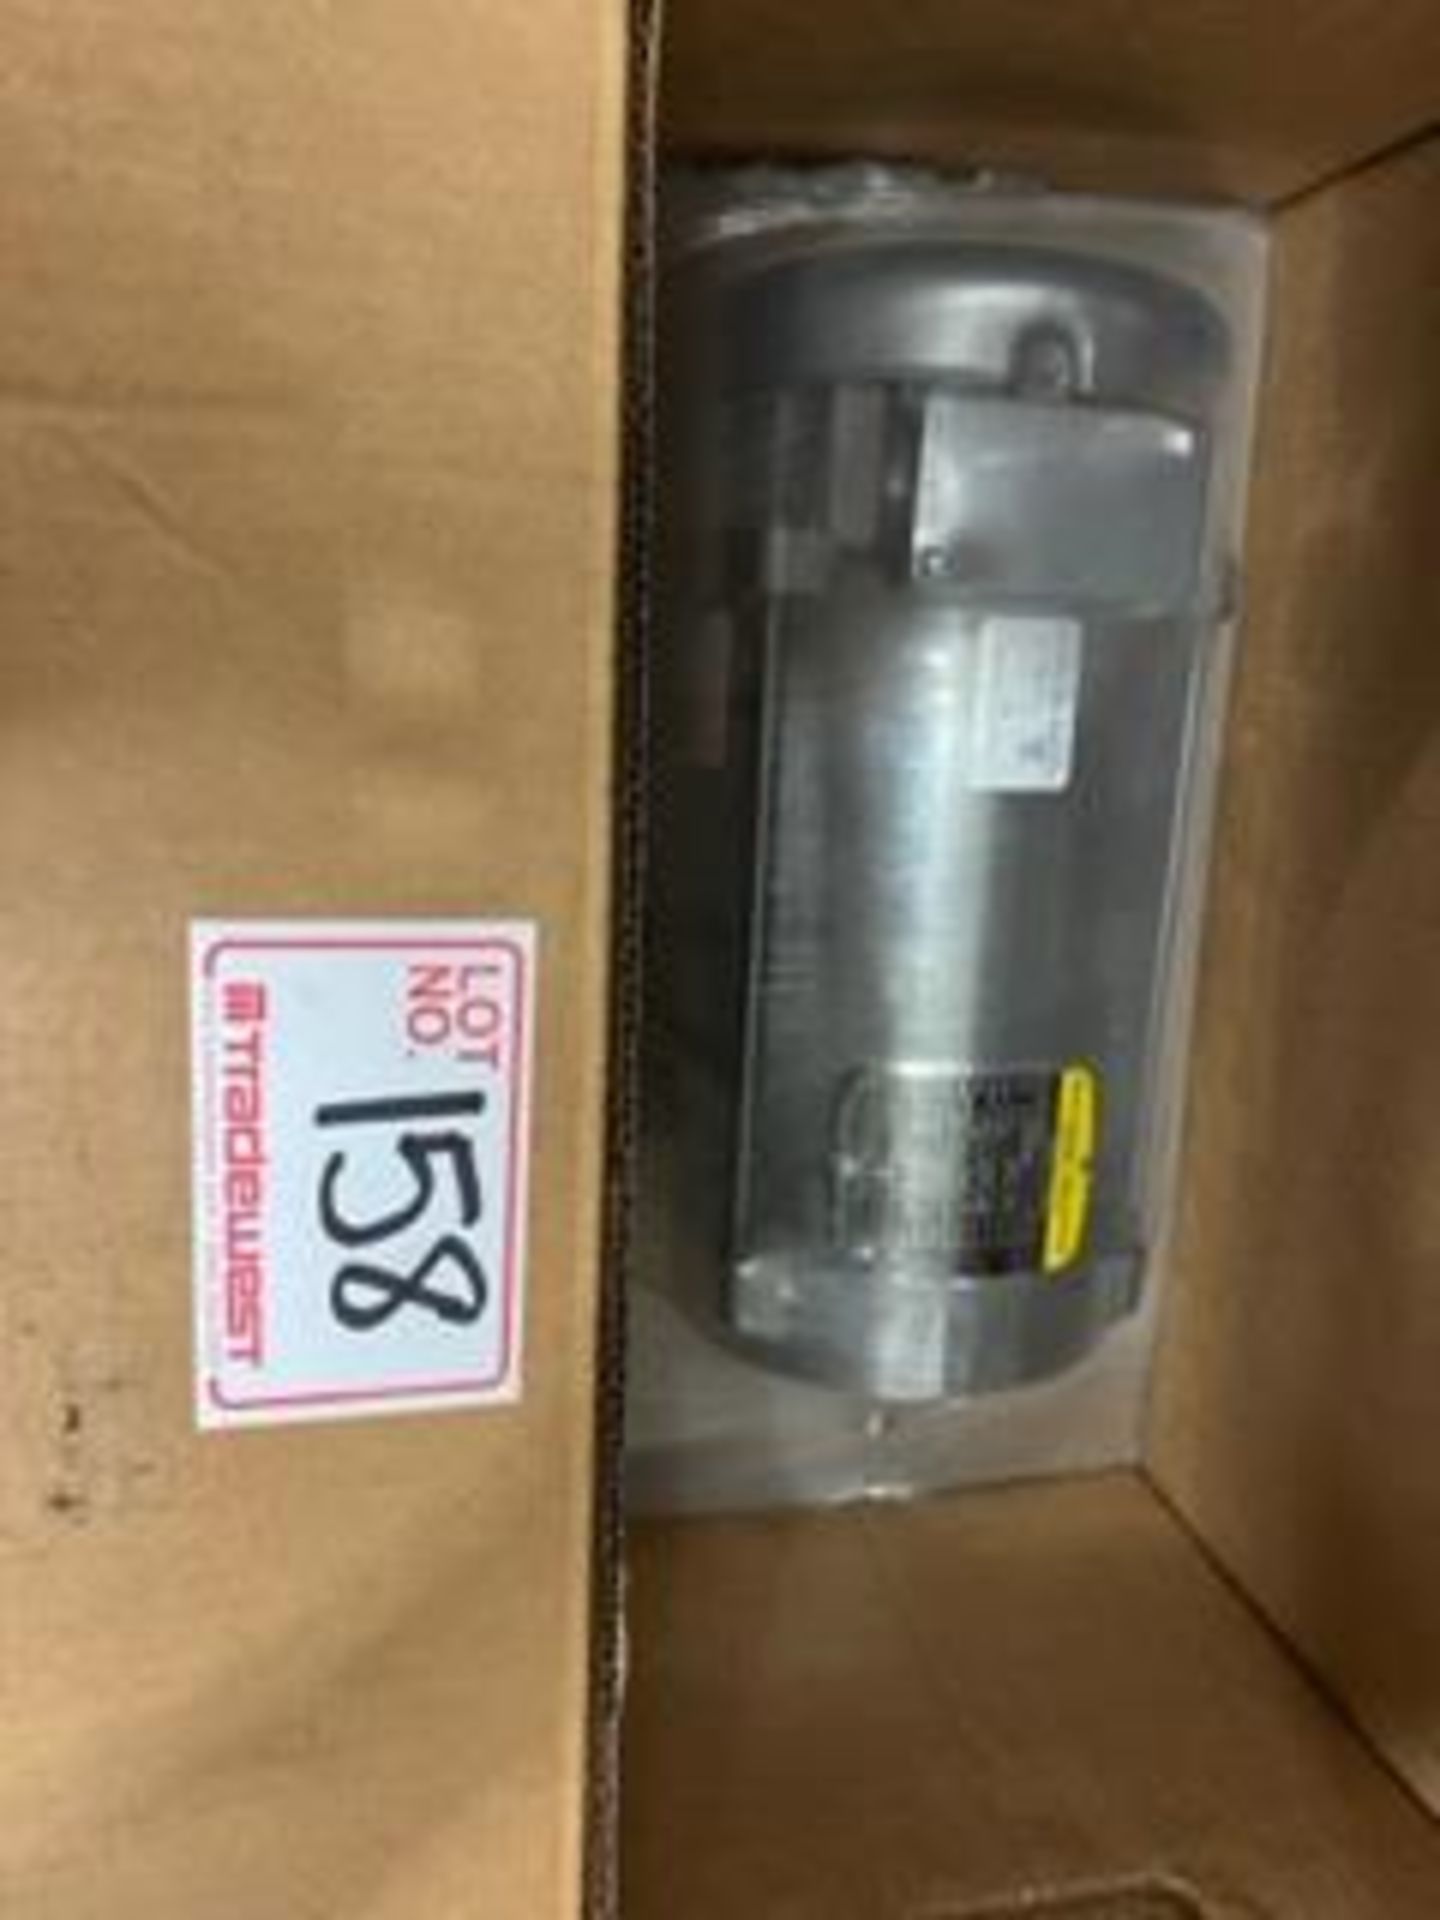 NEW IN BOX BALDOR ELECTRIC MOTOR, MODEL CDP3575; 1.5HP/1.12KW; 115/230V 1PH